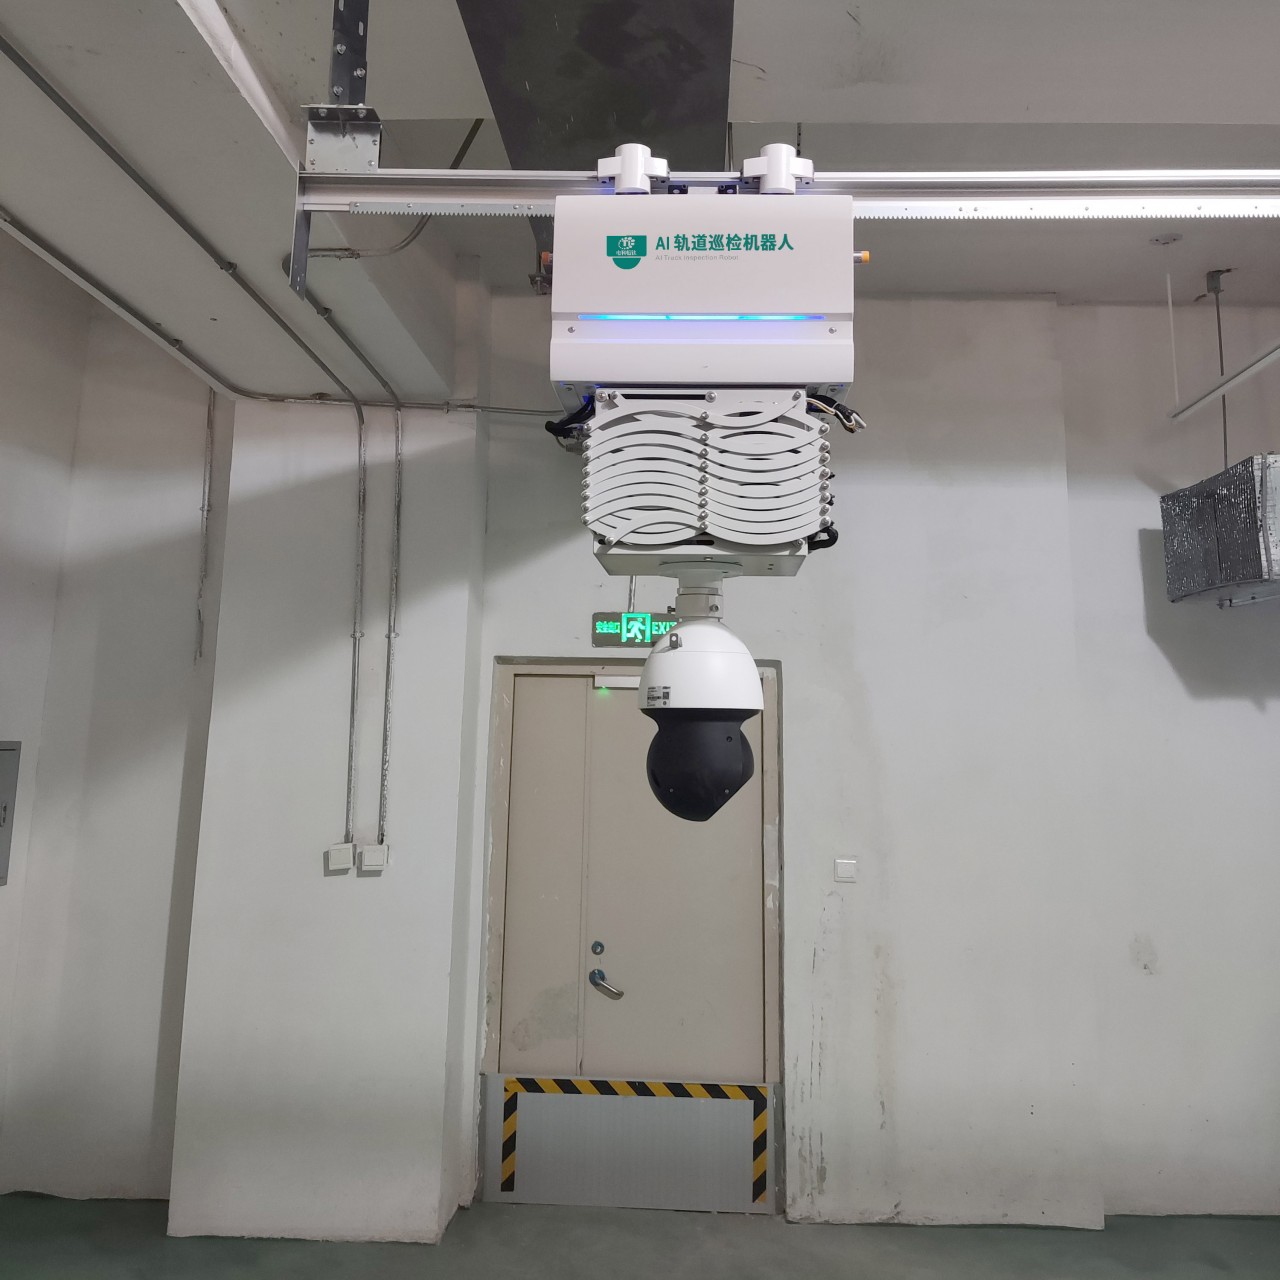 智能巡检机器人在滁州电网的应用与分析